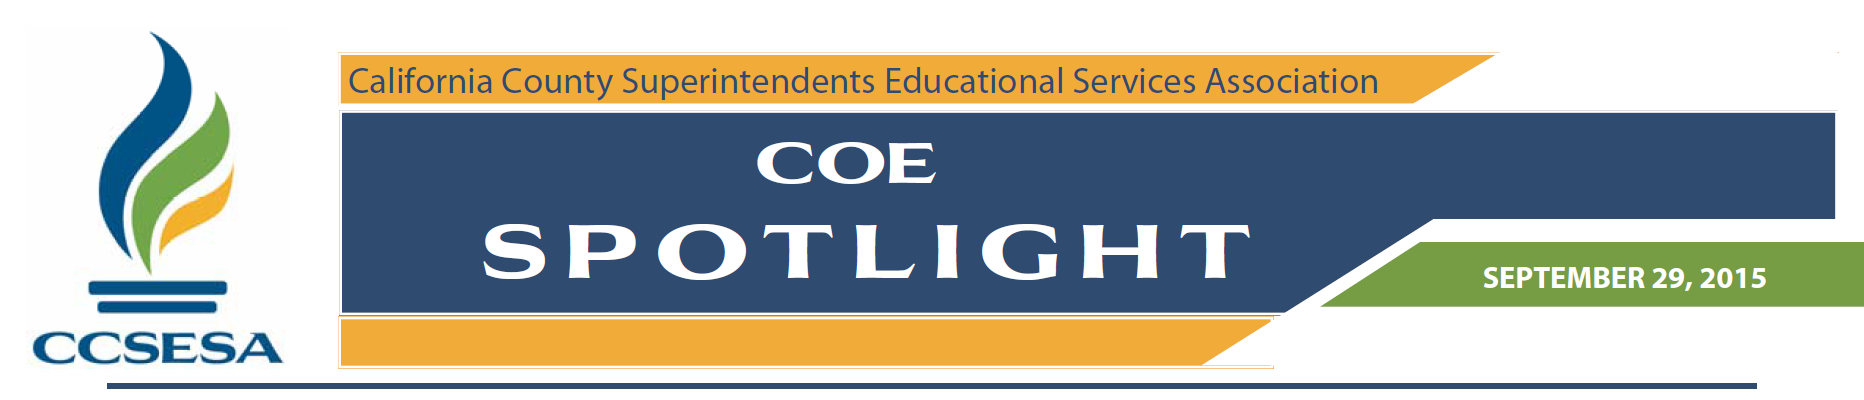 COE Spotlight 9.29.2015